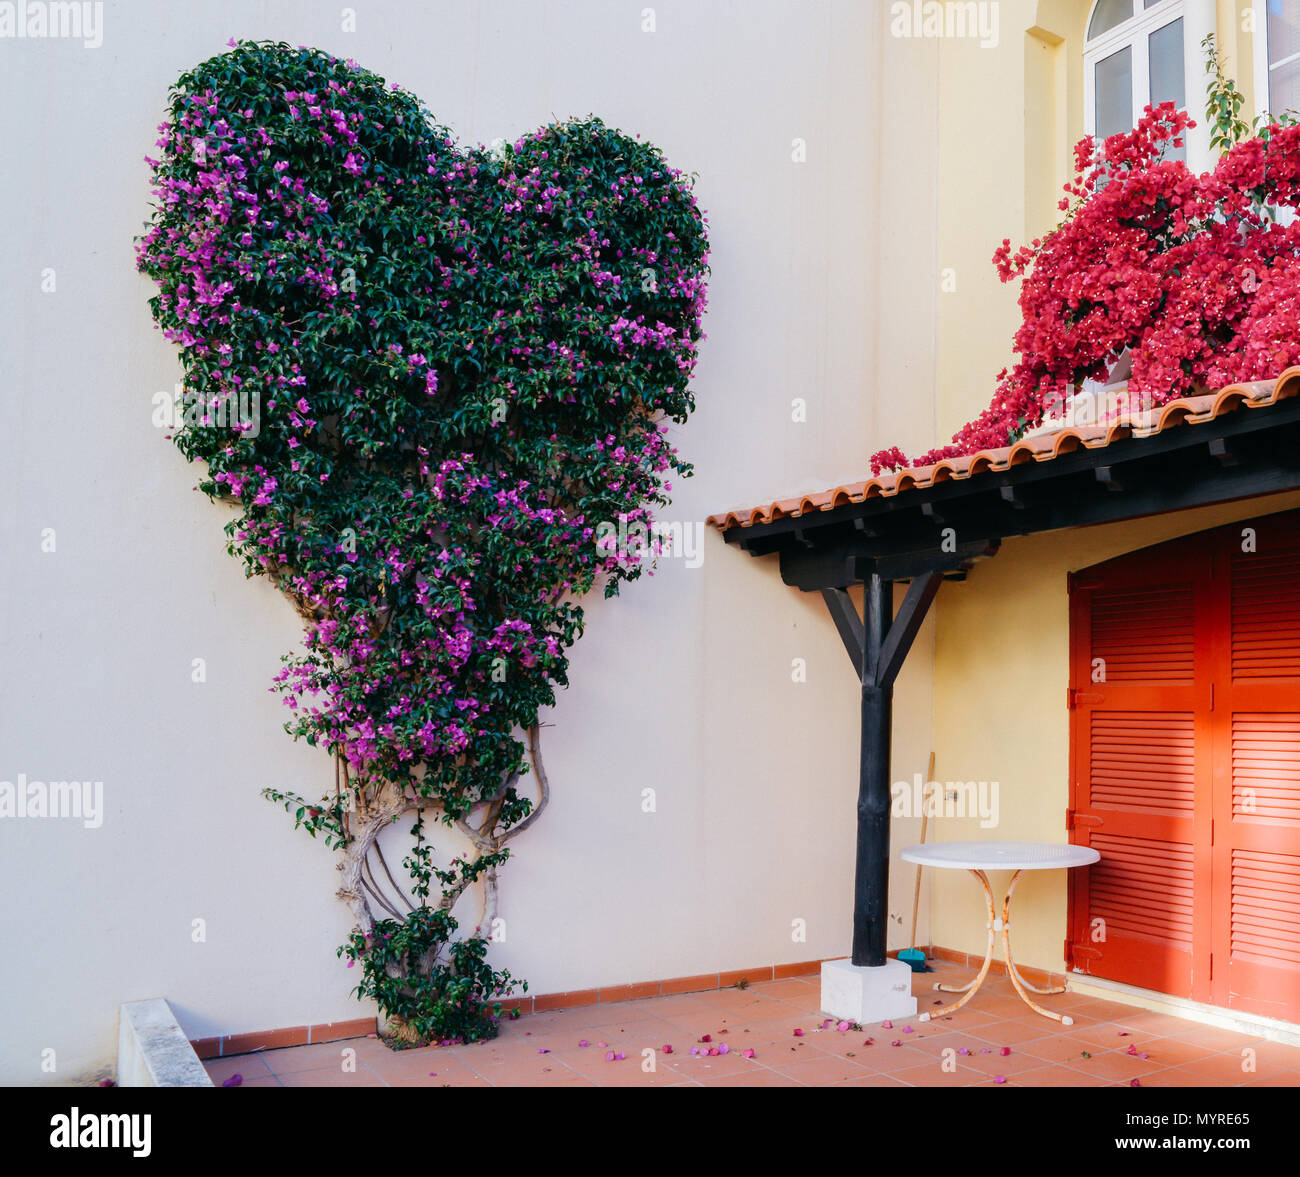 En forme de coeur bougainvilliers violet et vert sur le mur dans une villa au Portugal Banque D'Images